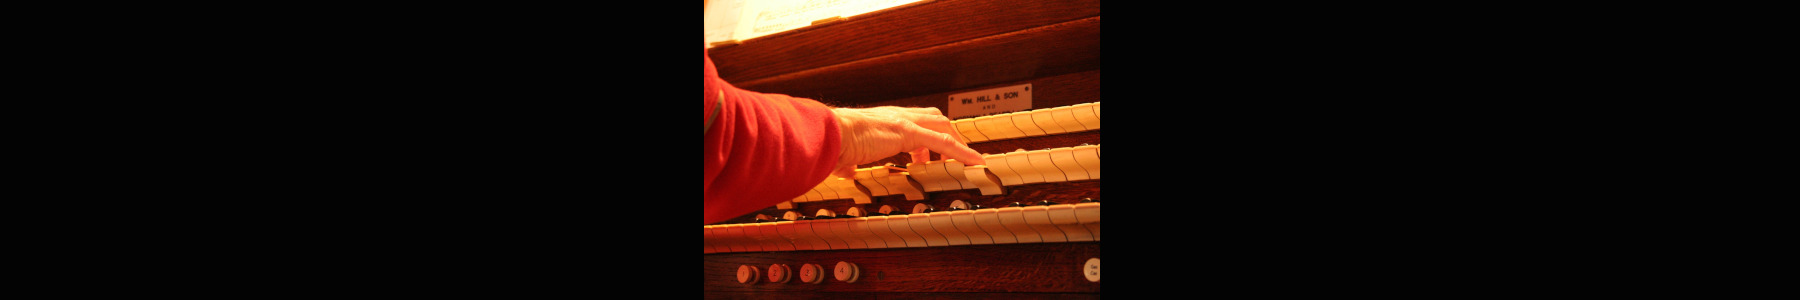 a photo of a church organist playing an organ